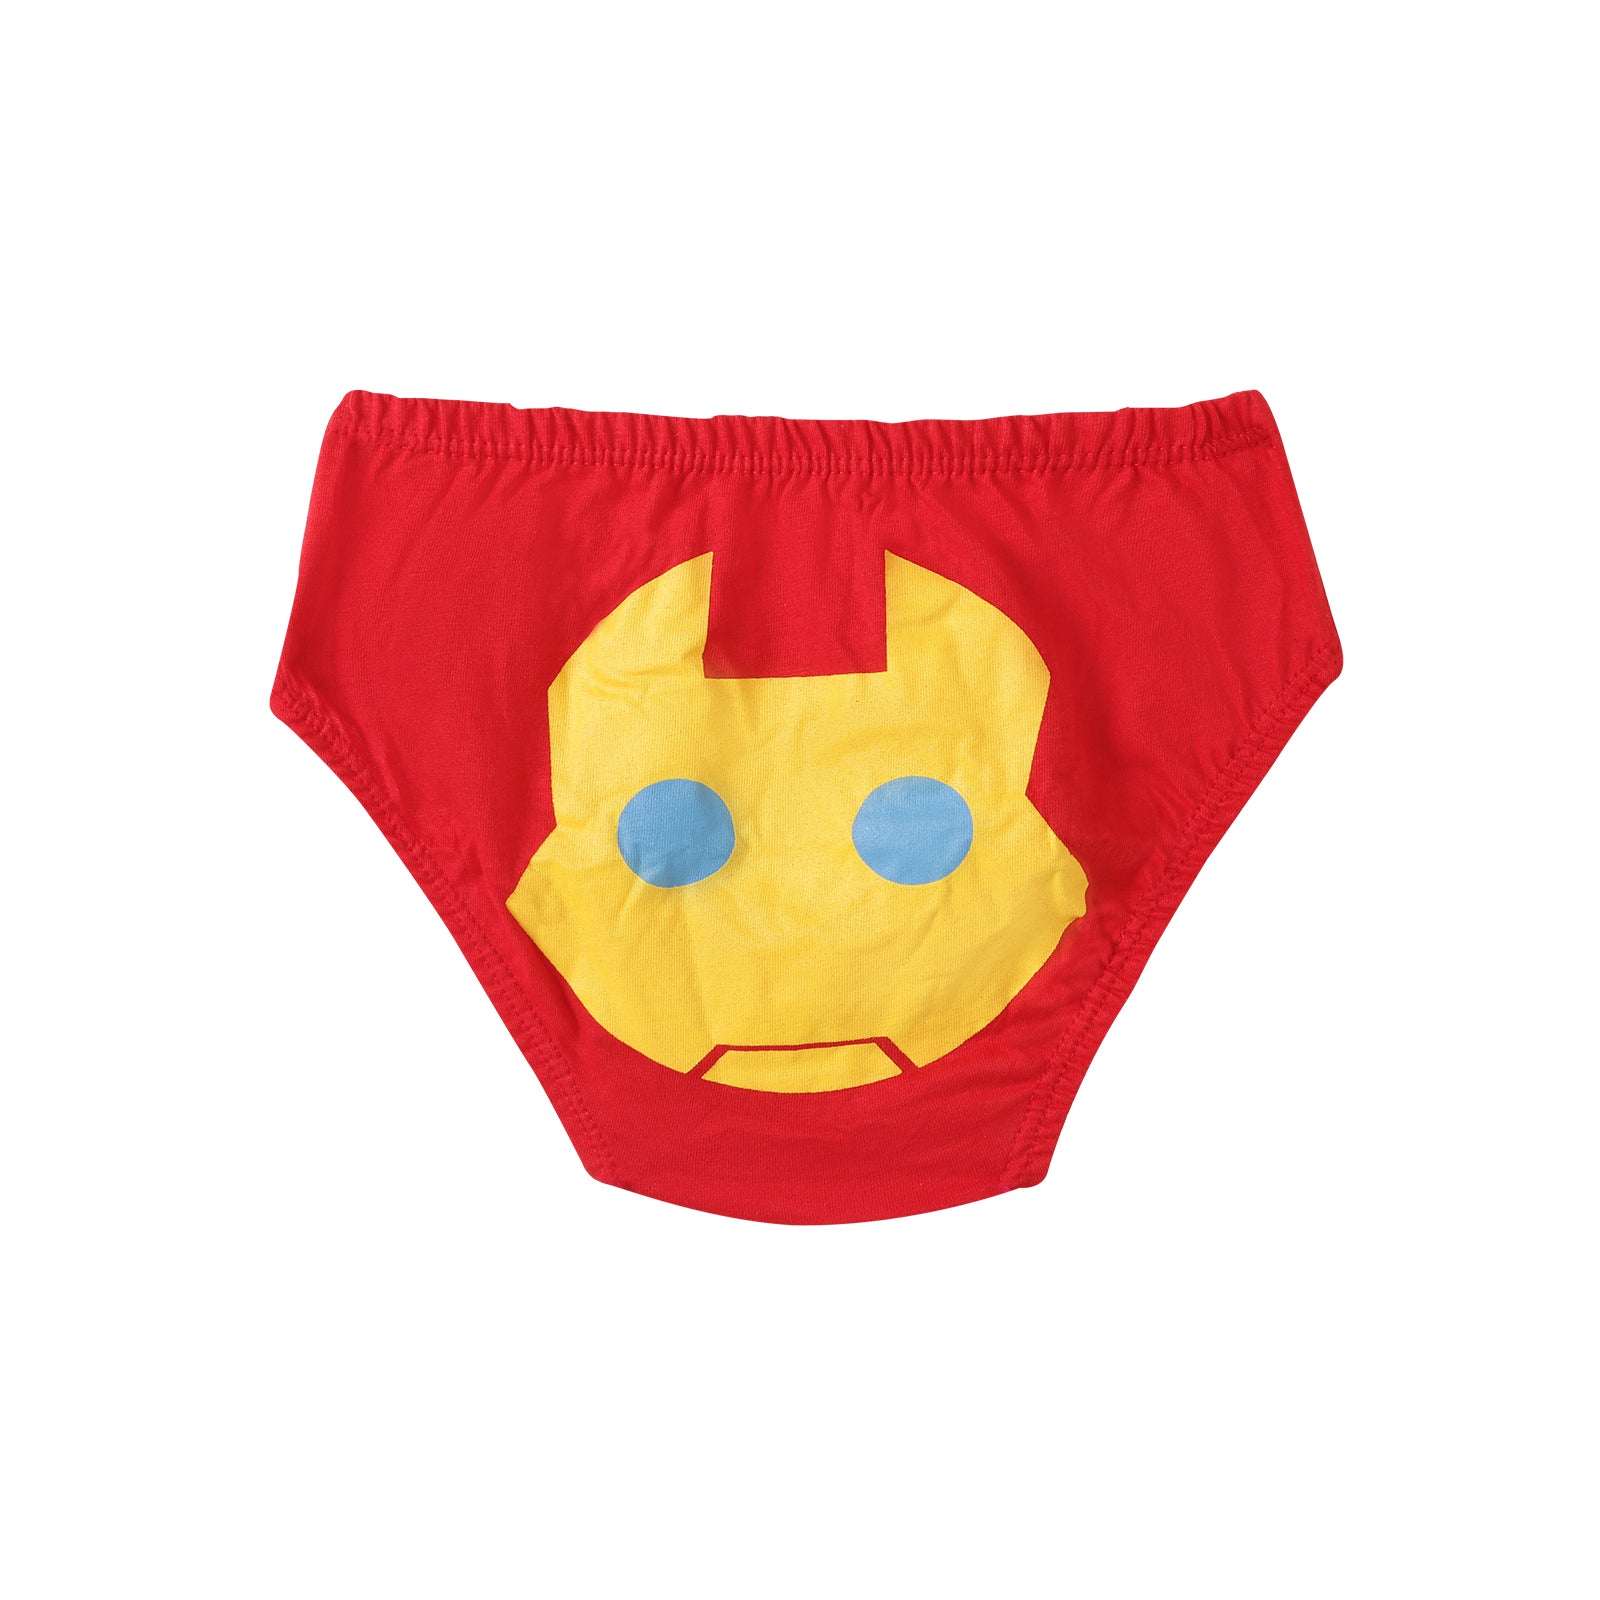 Super Hero 6-Pack Boy Underwear – Plan B